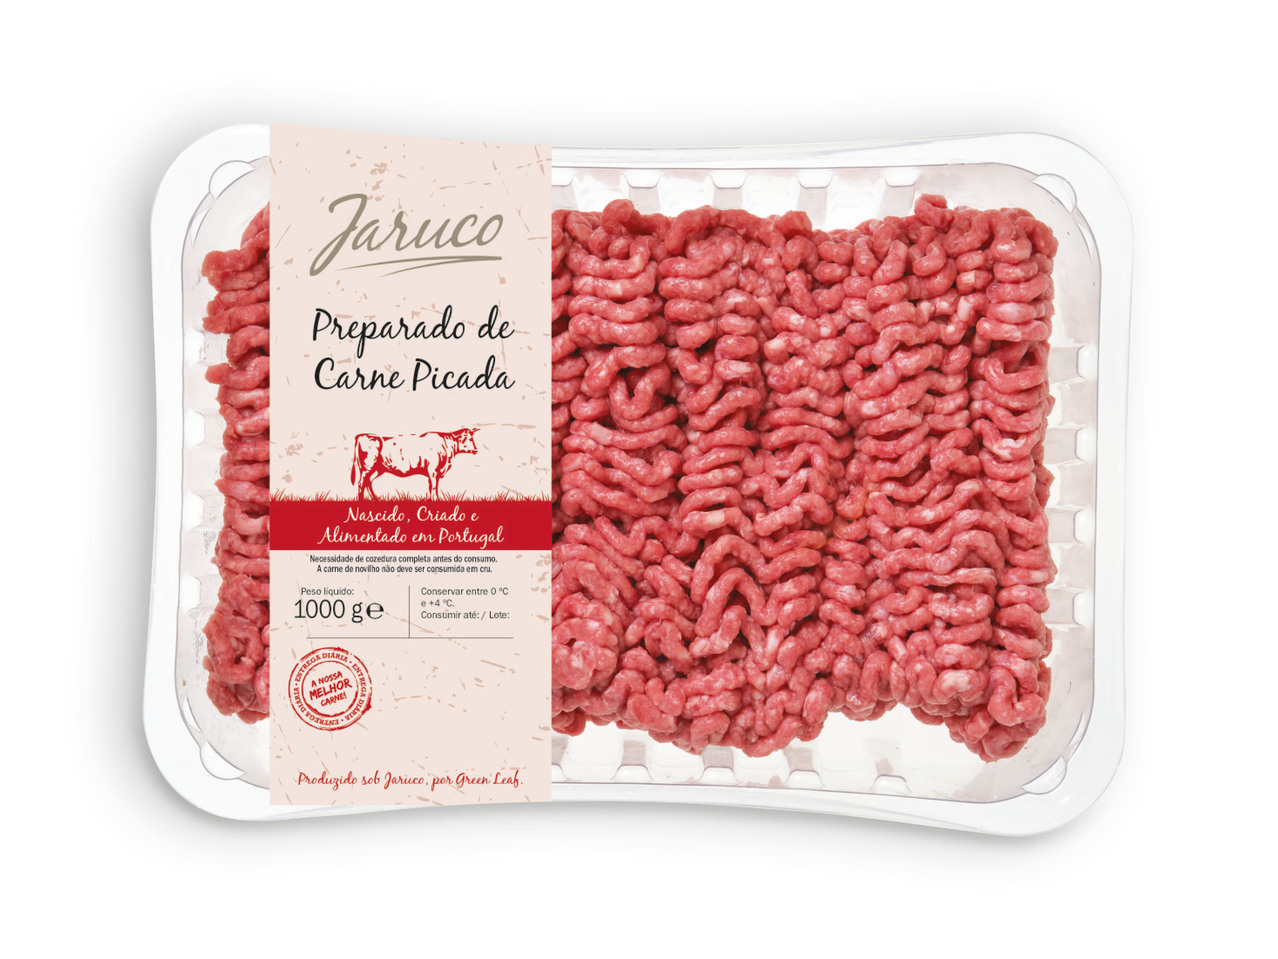 JARUCO(R) Preparado de Carne Picada de Bovino